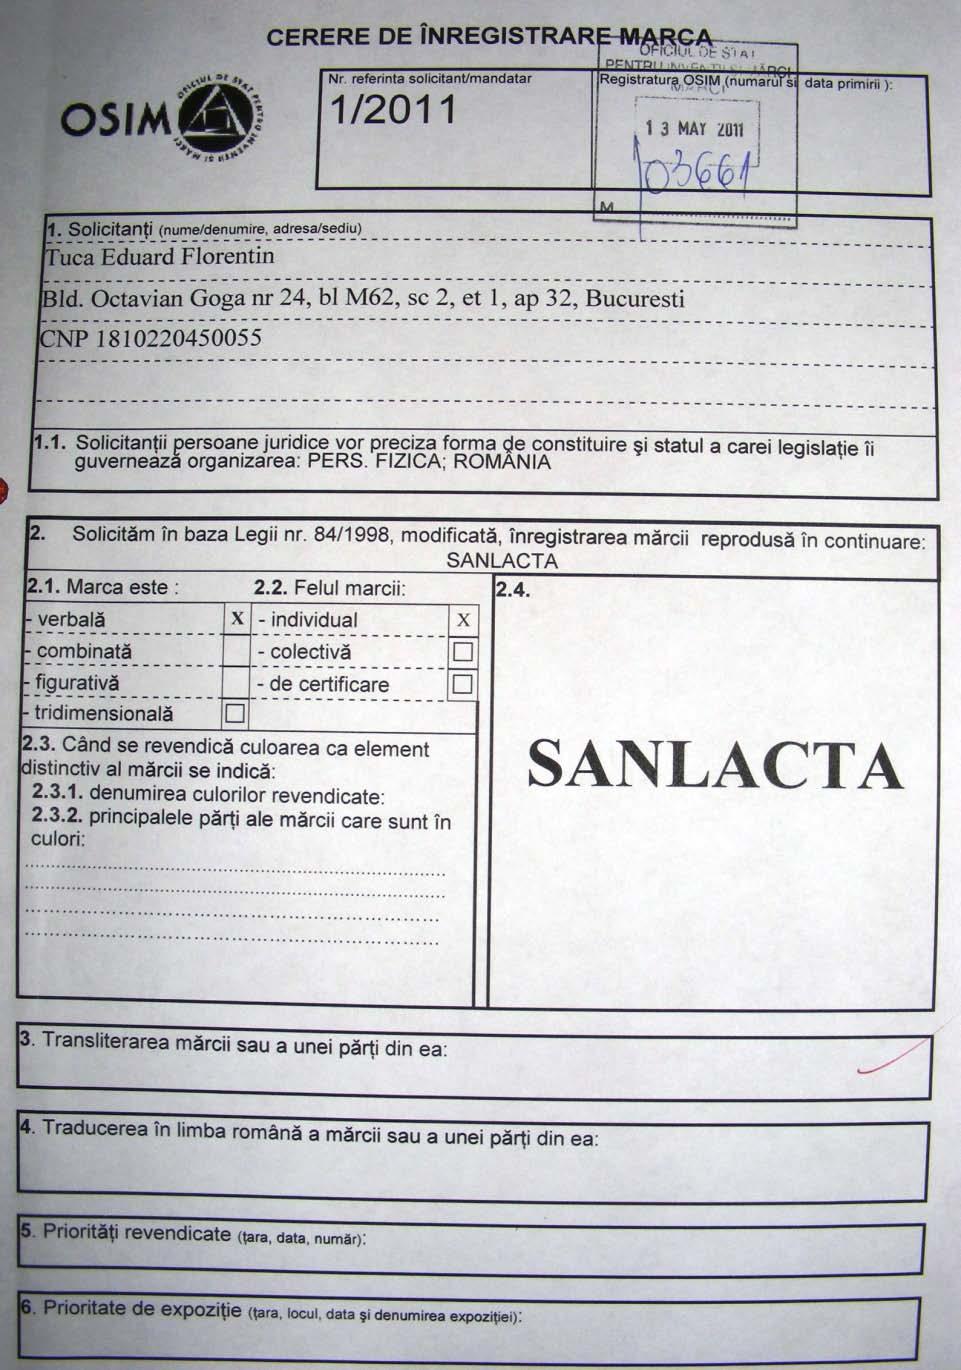 Similaritatea mărcilor în procedura de opoziţie Cap Aurora, august 2012 S-a depus cere de inregistrare a marcii SANLACTA (verbala) pentru clasele de produse si servicii 29 - Carne, peşte, păsări,